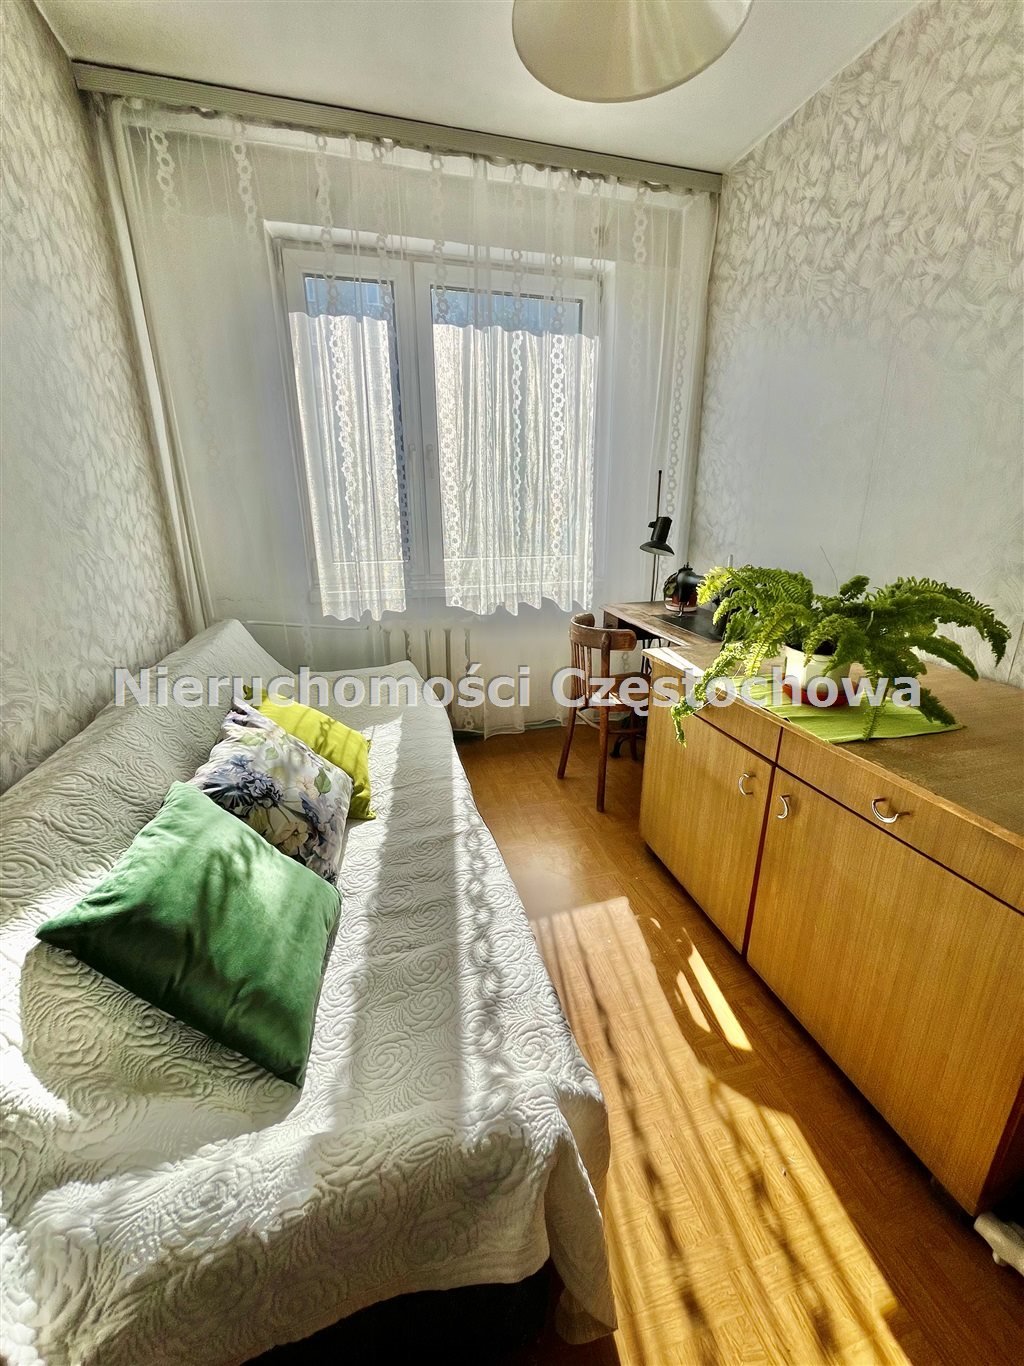 Mieszkanie trzypokojowe na sprzedaż Częstochowa, Tysiąclecie  55m2 Foto 1